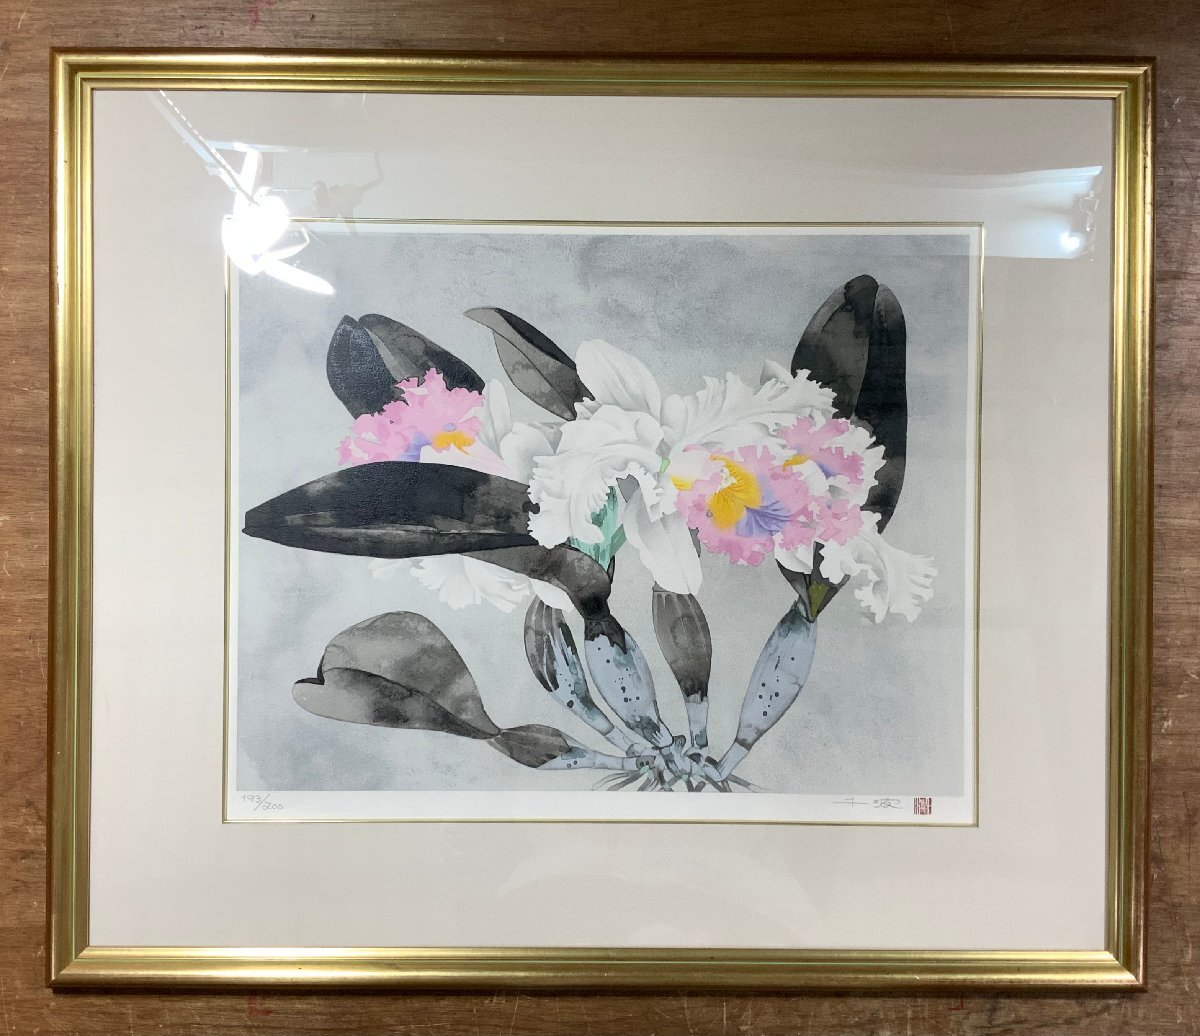 BA618 ■शिपिंग शामिल है■ चिनामी नाकाजिमा कैटलिया सिल्कस्क्रीन 200 प्रतियों तक सीमित P10 आकार हस्त-हस्ताक्षरित फूल जापानी पेंटिंग नागानो प्रान्त से चित्रकार पेंटिंग कलाकृति 3.3 किग्रा / कुजयरा, कलाकृति, प्रिंटों, silkscreen